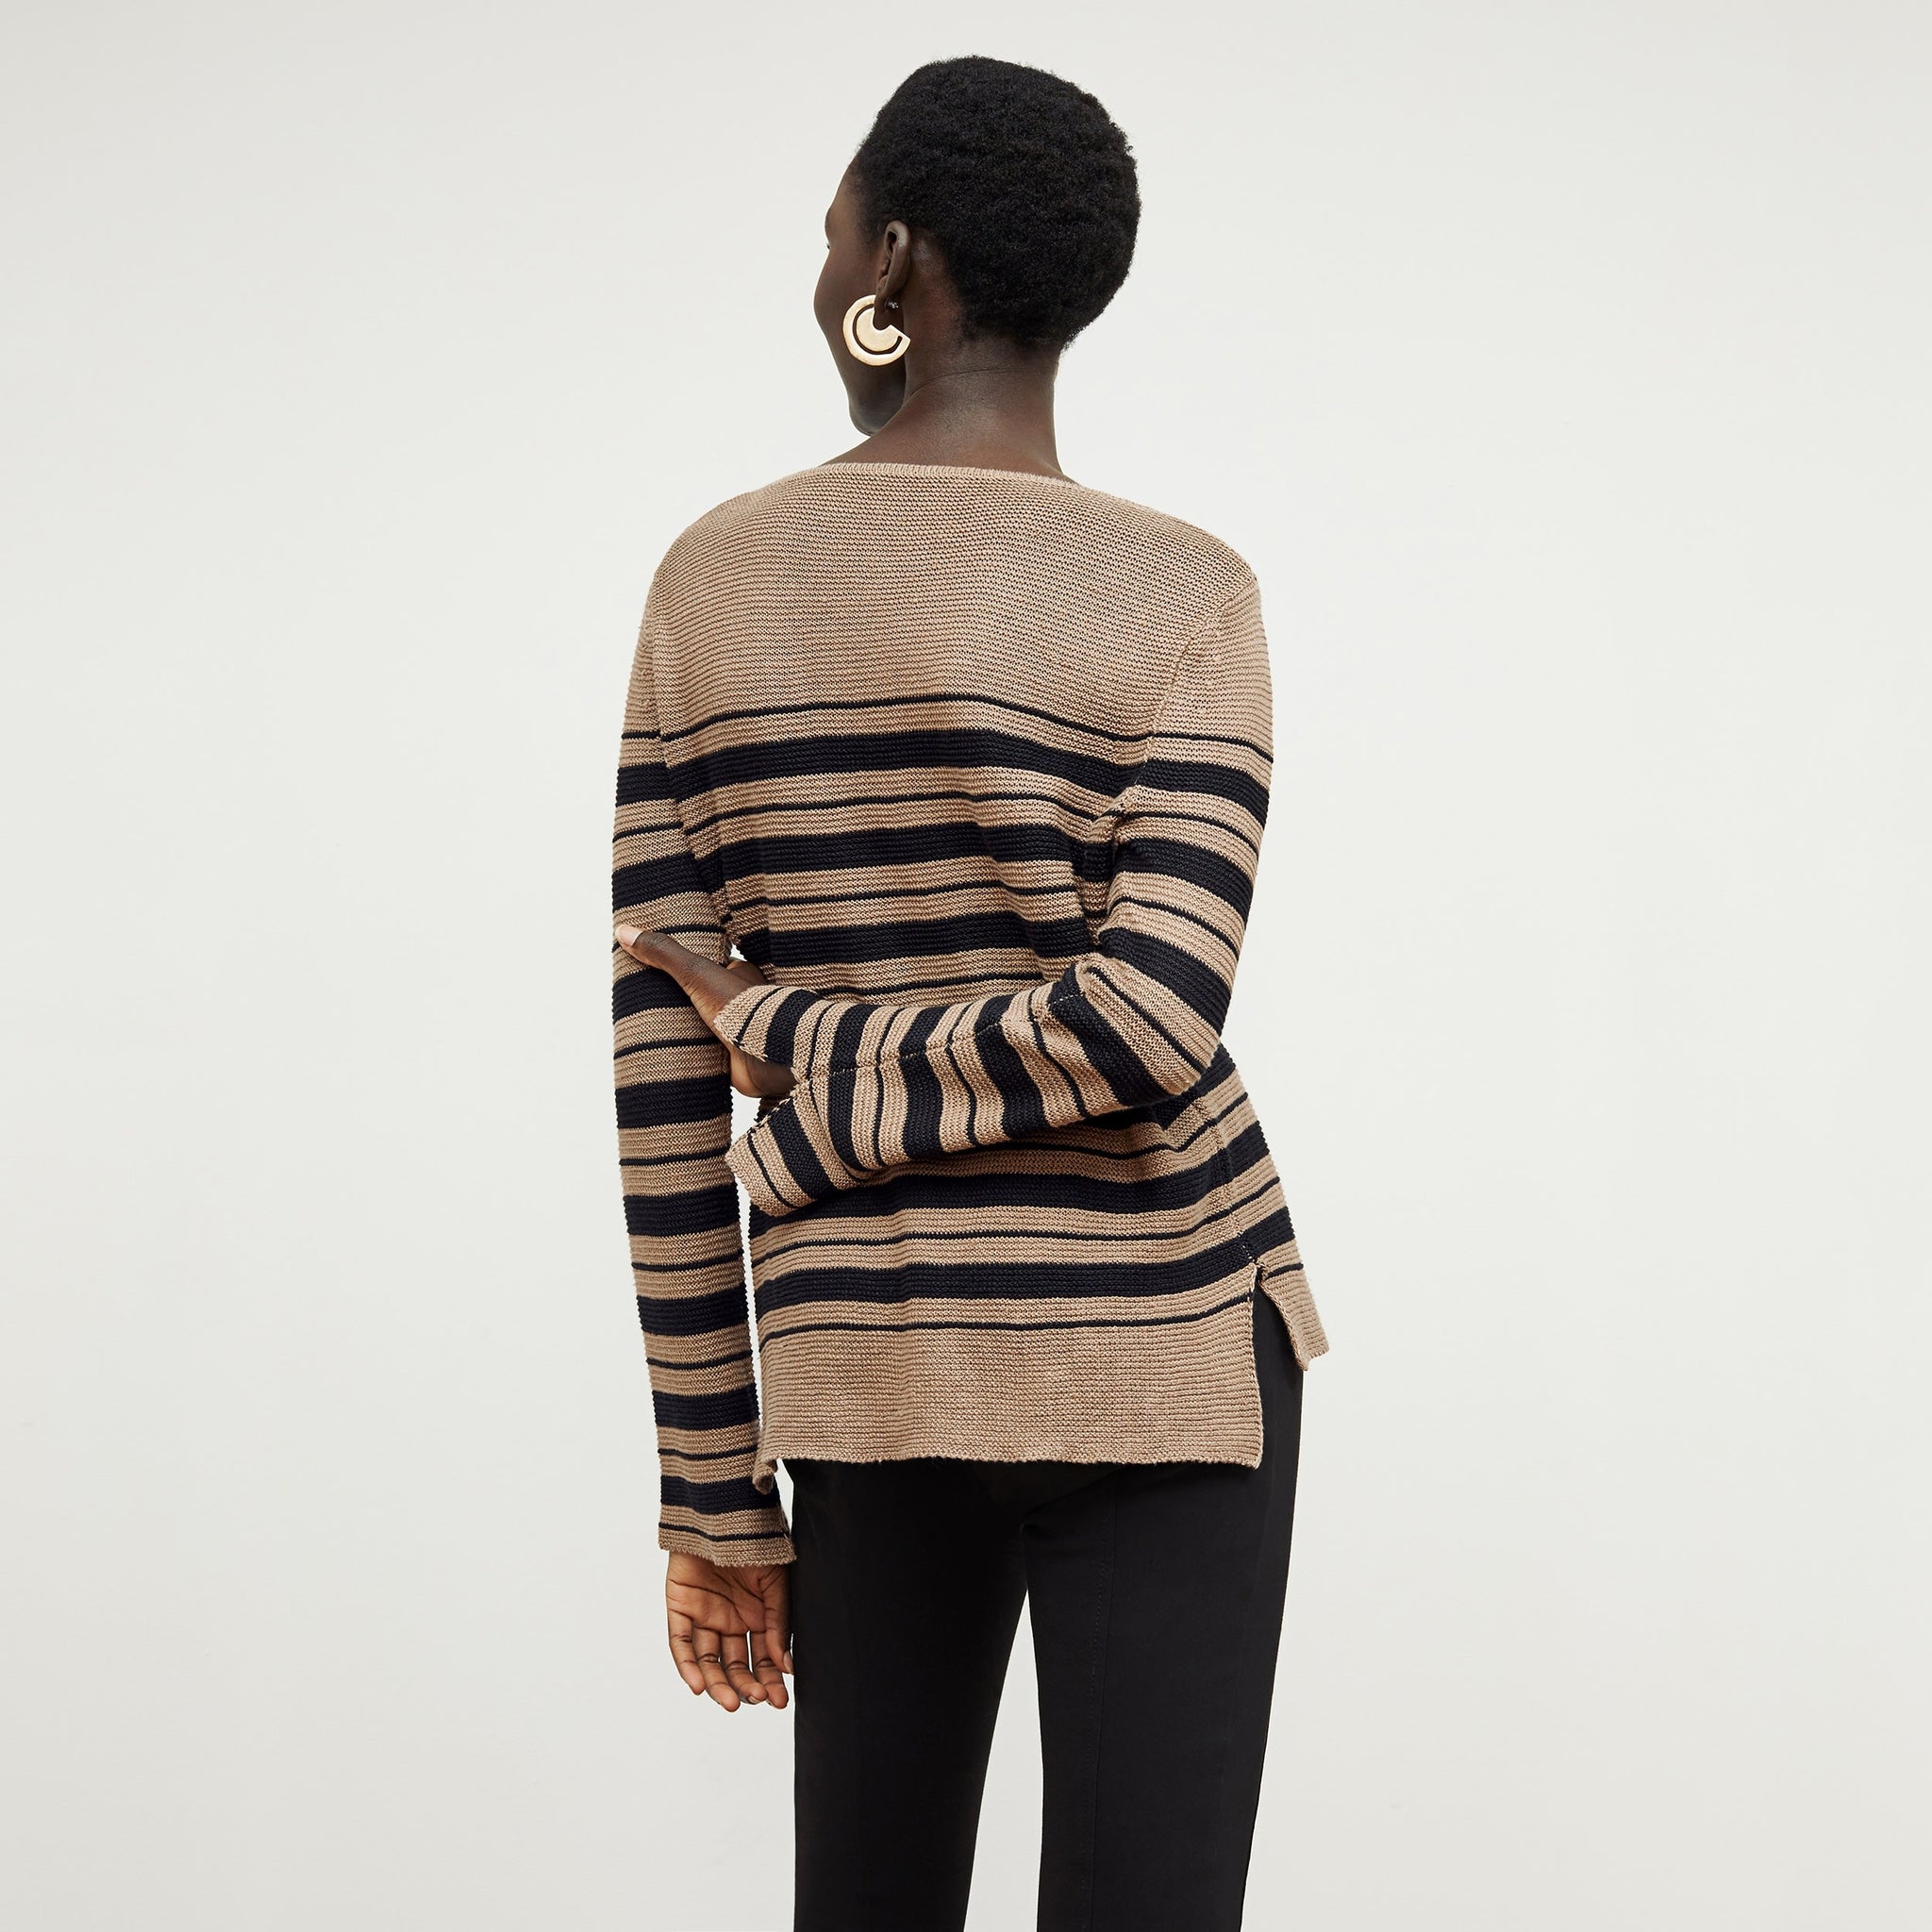 Back image of a woman standing wearing the Samara Sweater—Knit Linen in Oak / Black